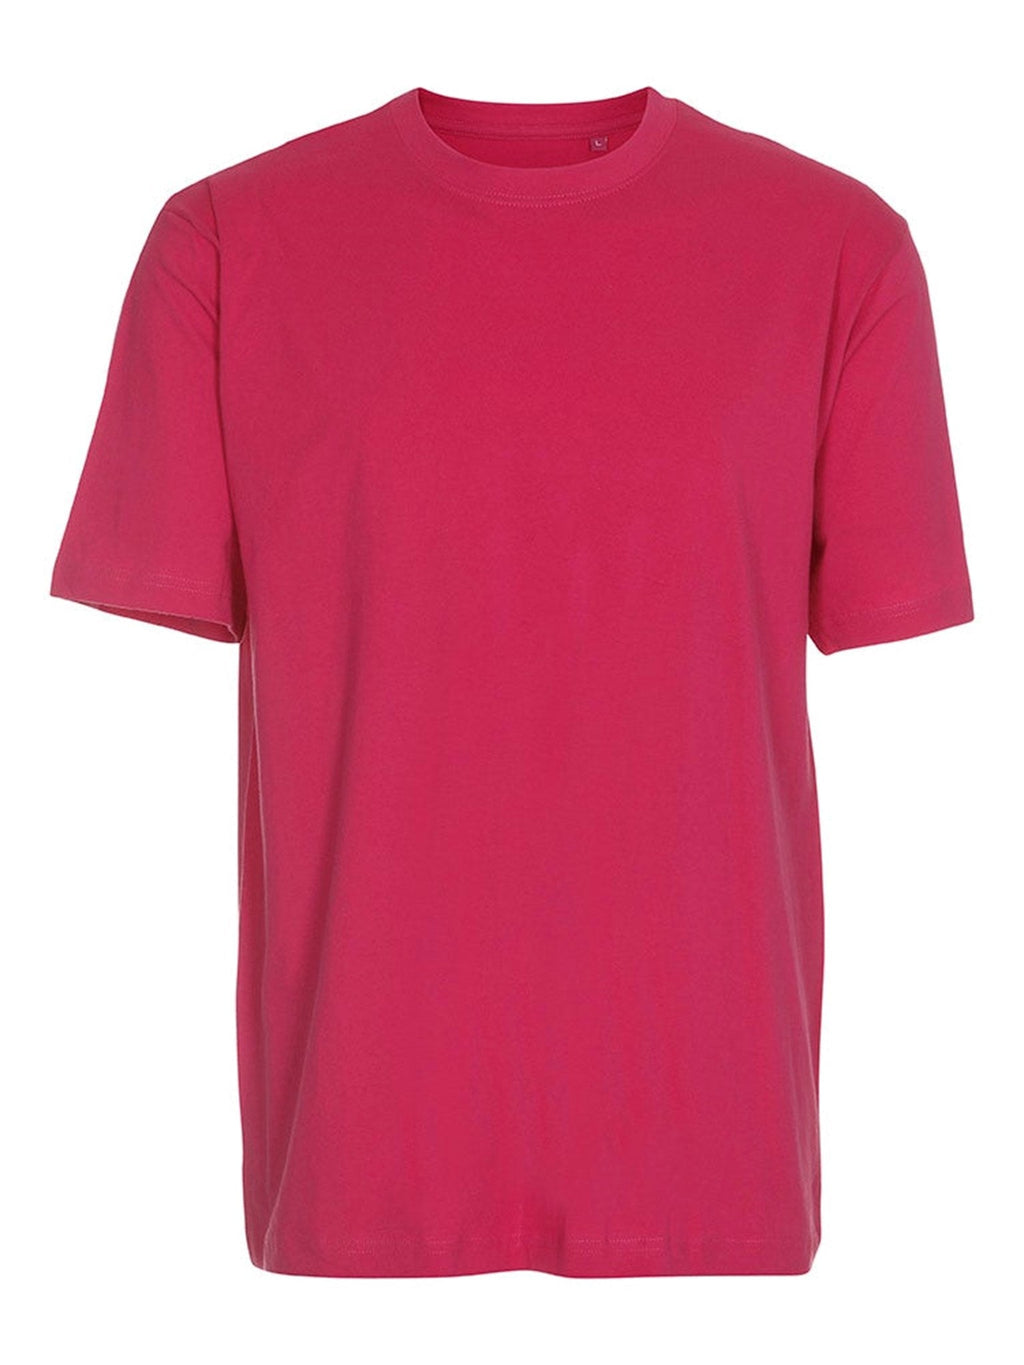 超大T恤 - 粉红色